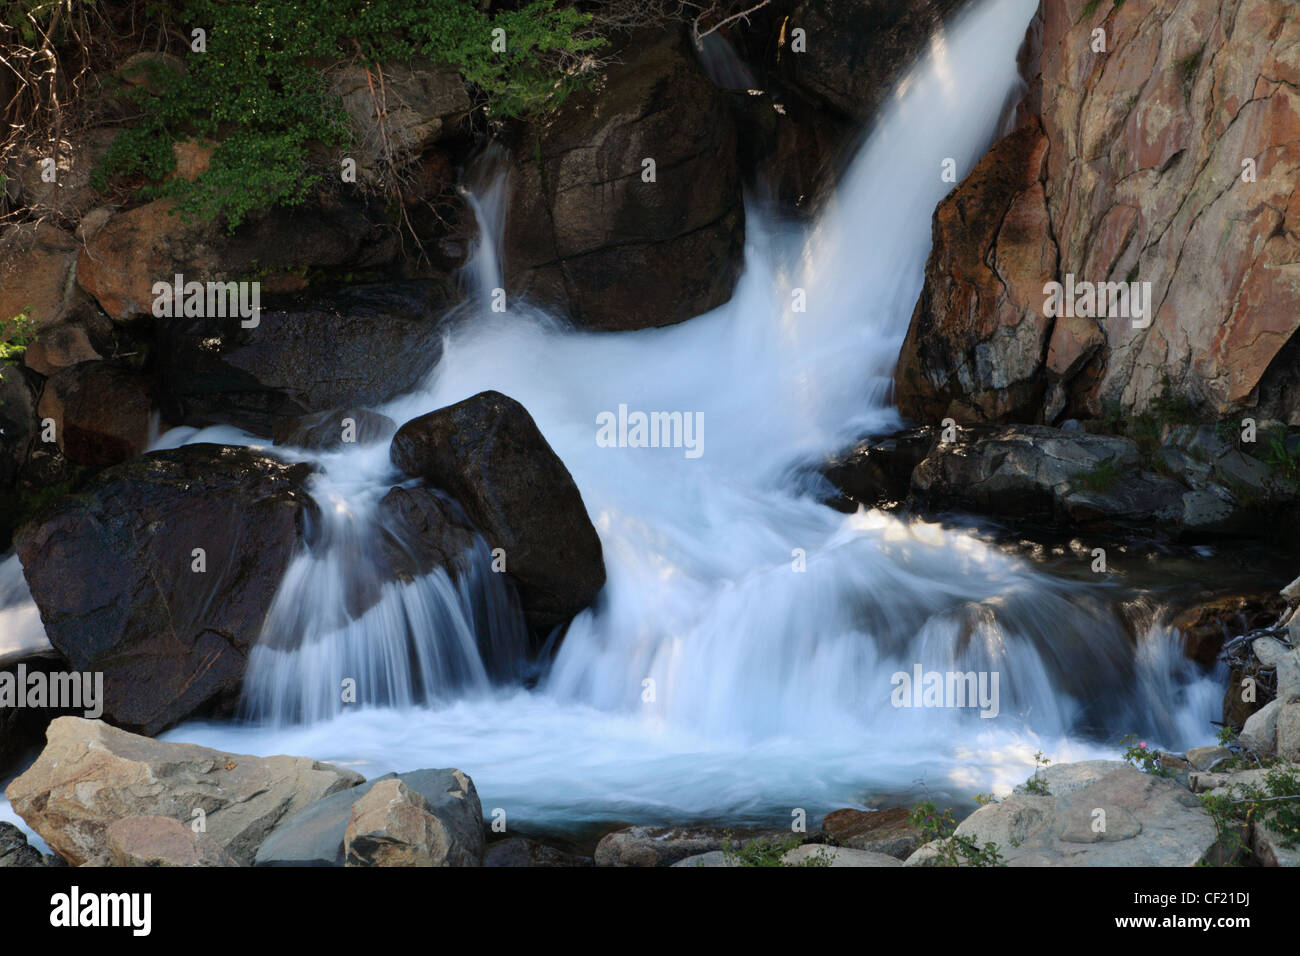 felsigen Wasserfall in einem Bach in der Sierra Nevada mit glatte seidige Wasser Stockfoto